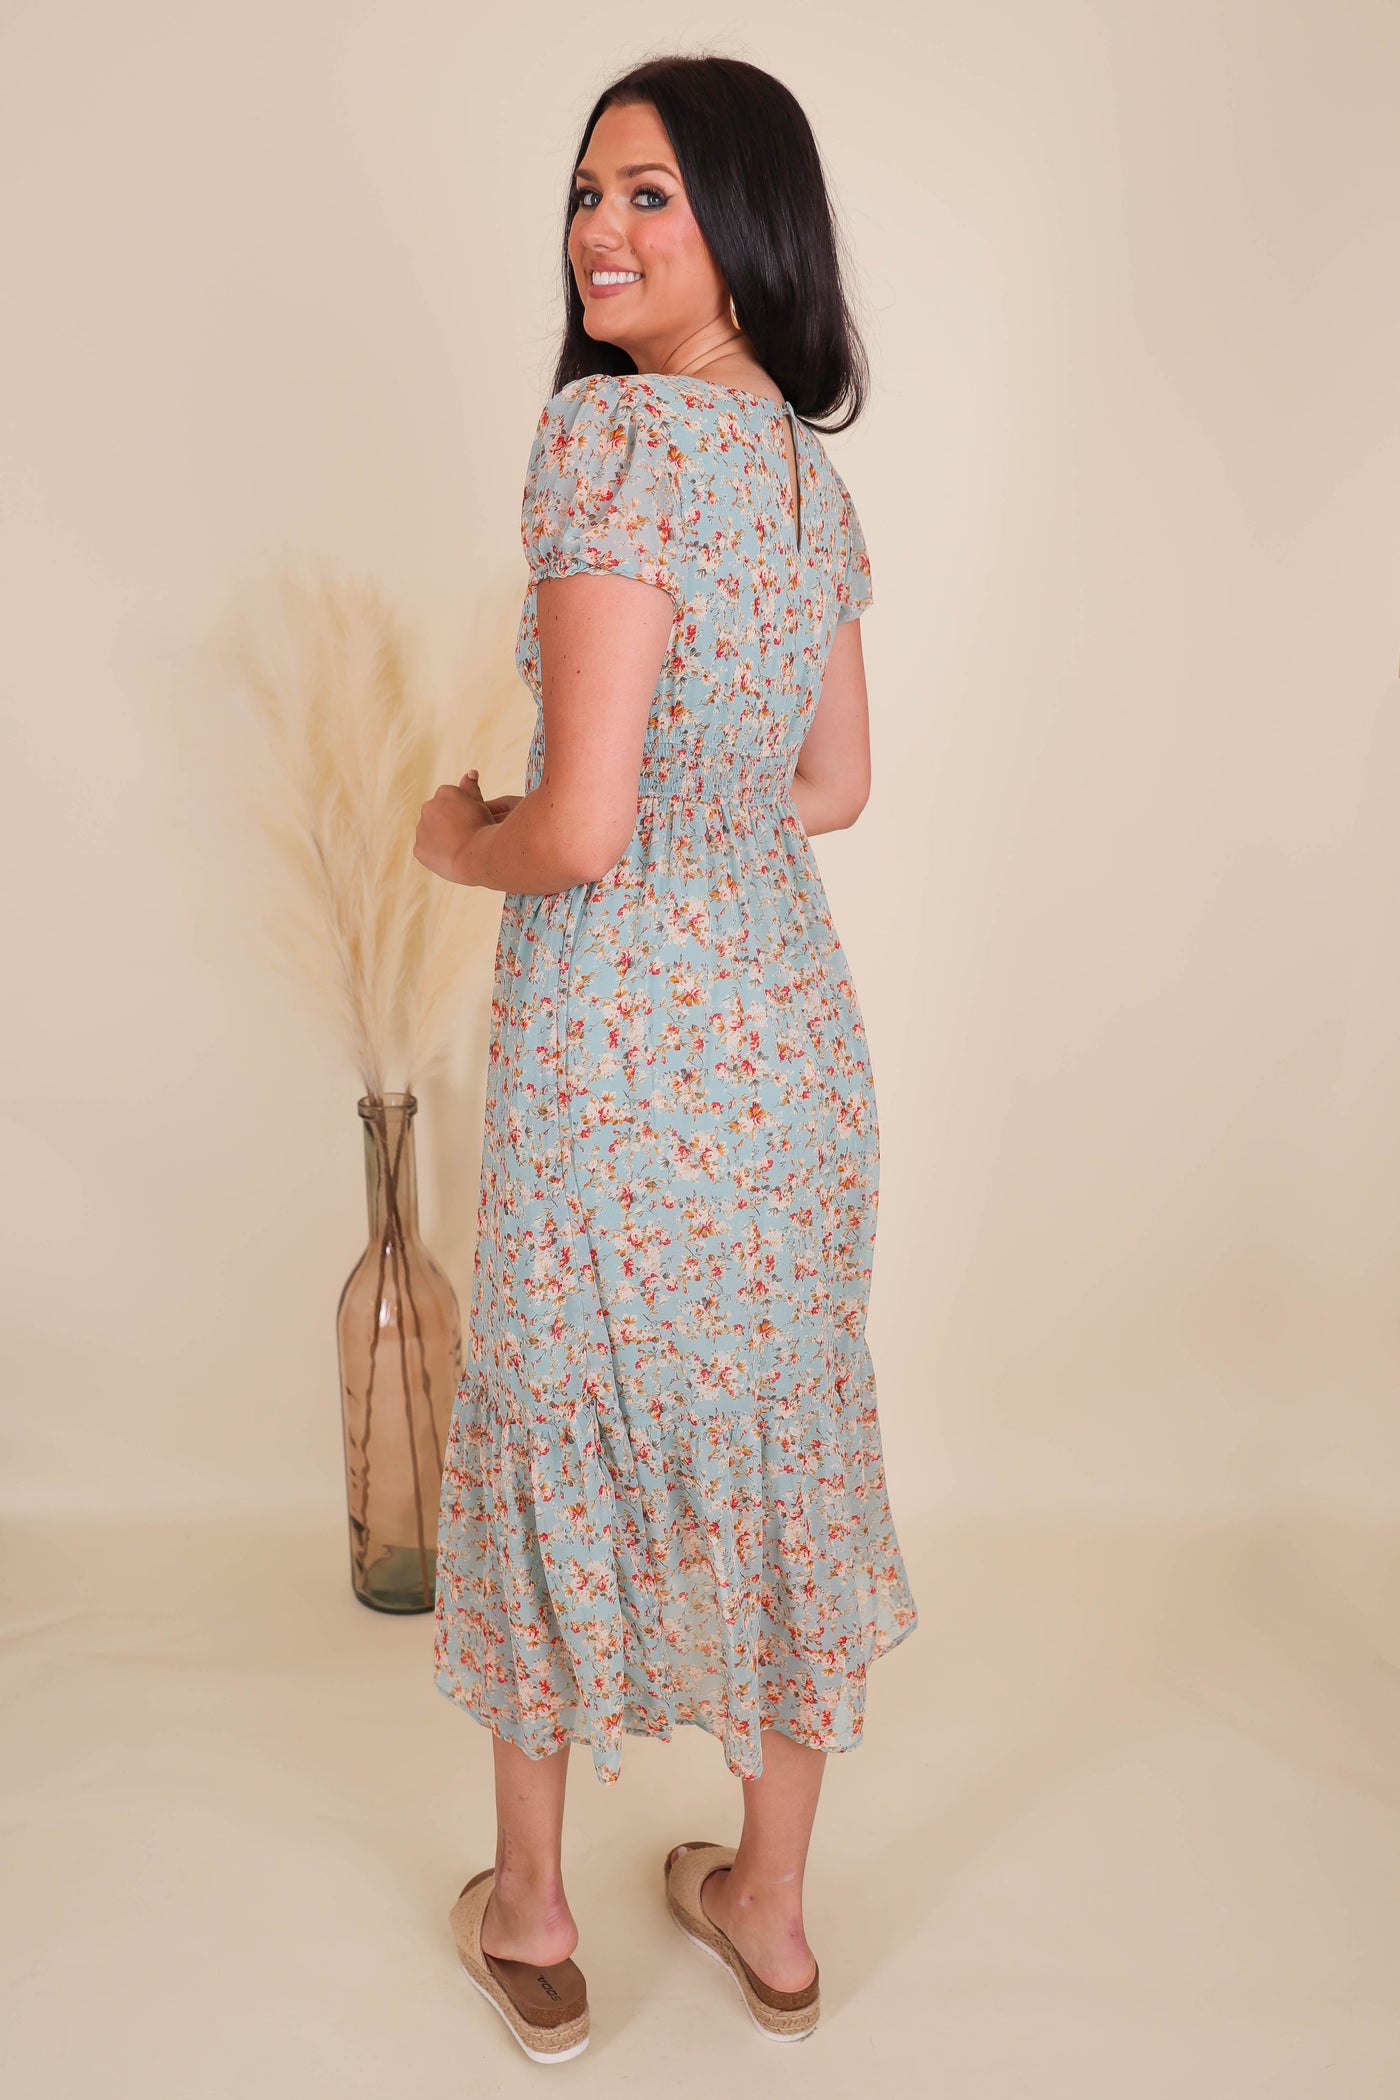 Floral Print Midi Dress- Women's Cottagecore Dresses- Women's Conservative Dresses